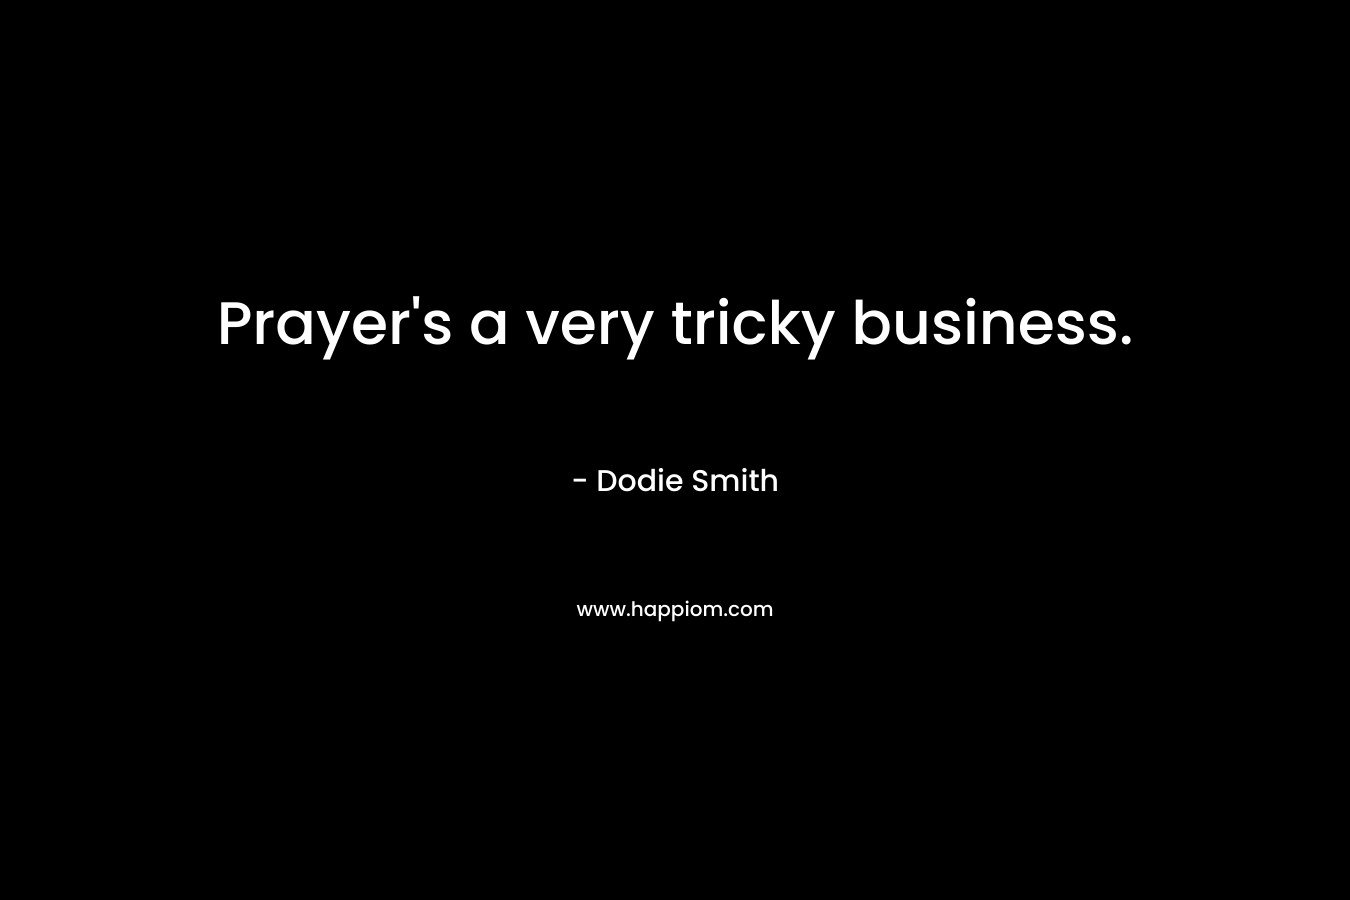 Prayer's a very tricky business.